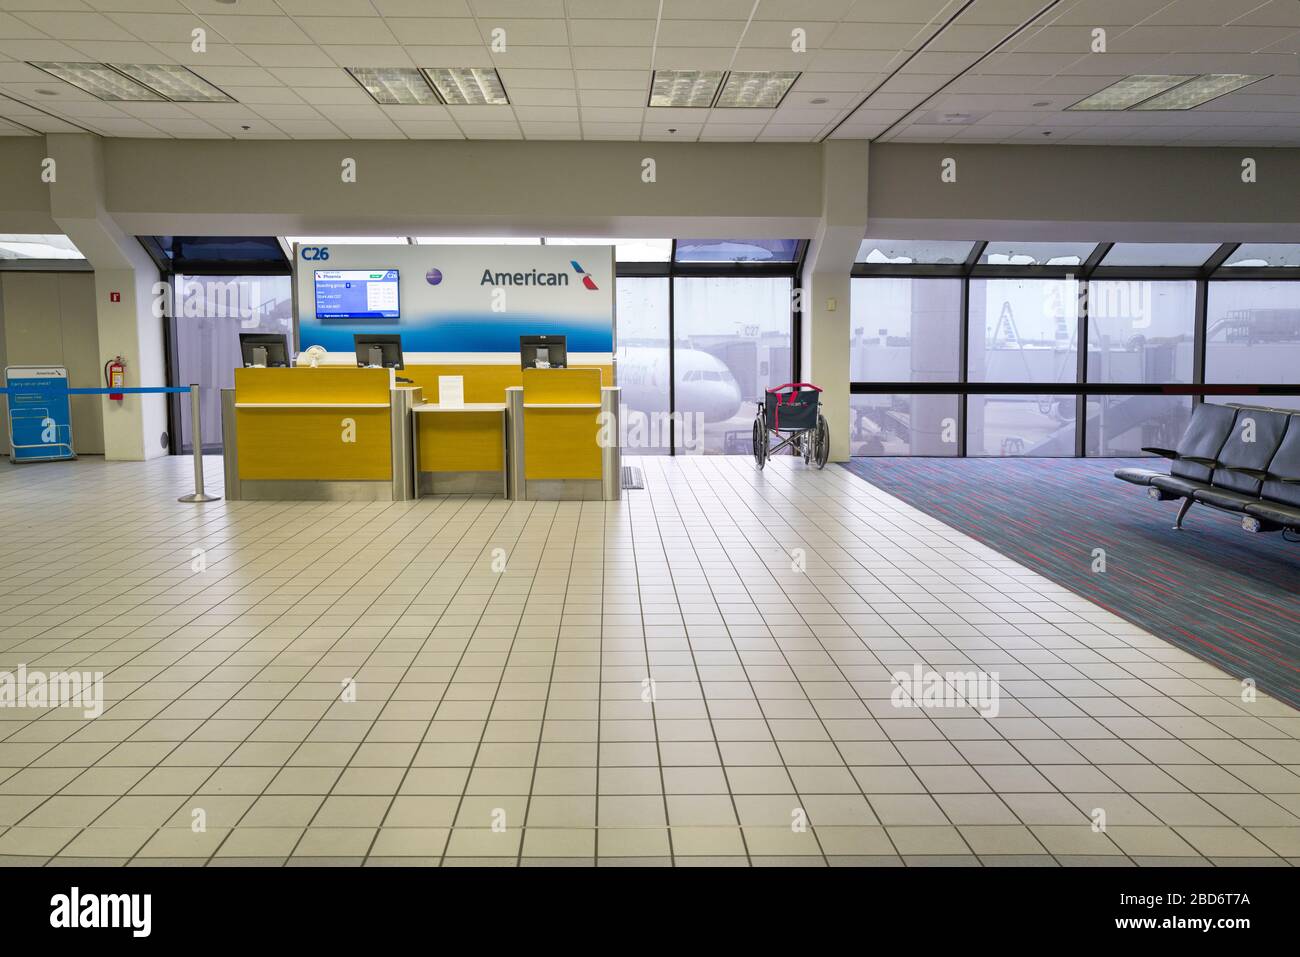 Aeropuerto Internacional Dallas Forth Worth, la puerta de llegada/salida de American Airlines está vacía debido a las cancelaciones de la pandemia de Coronavirus COVID-19. Foto de stock